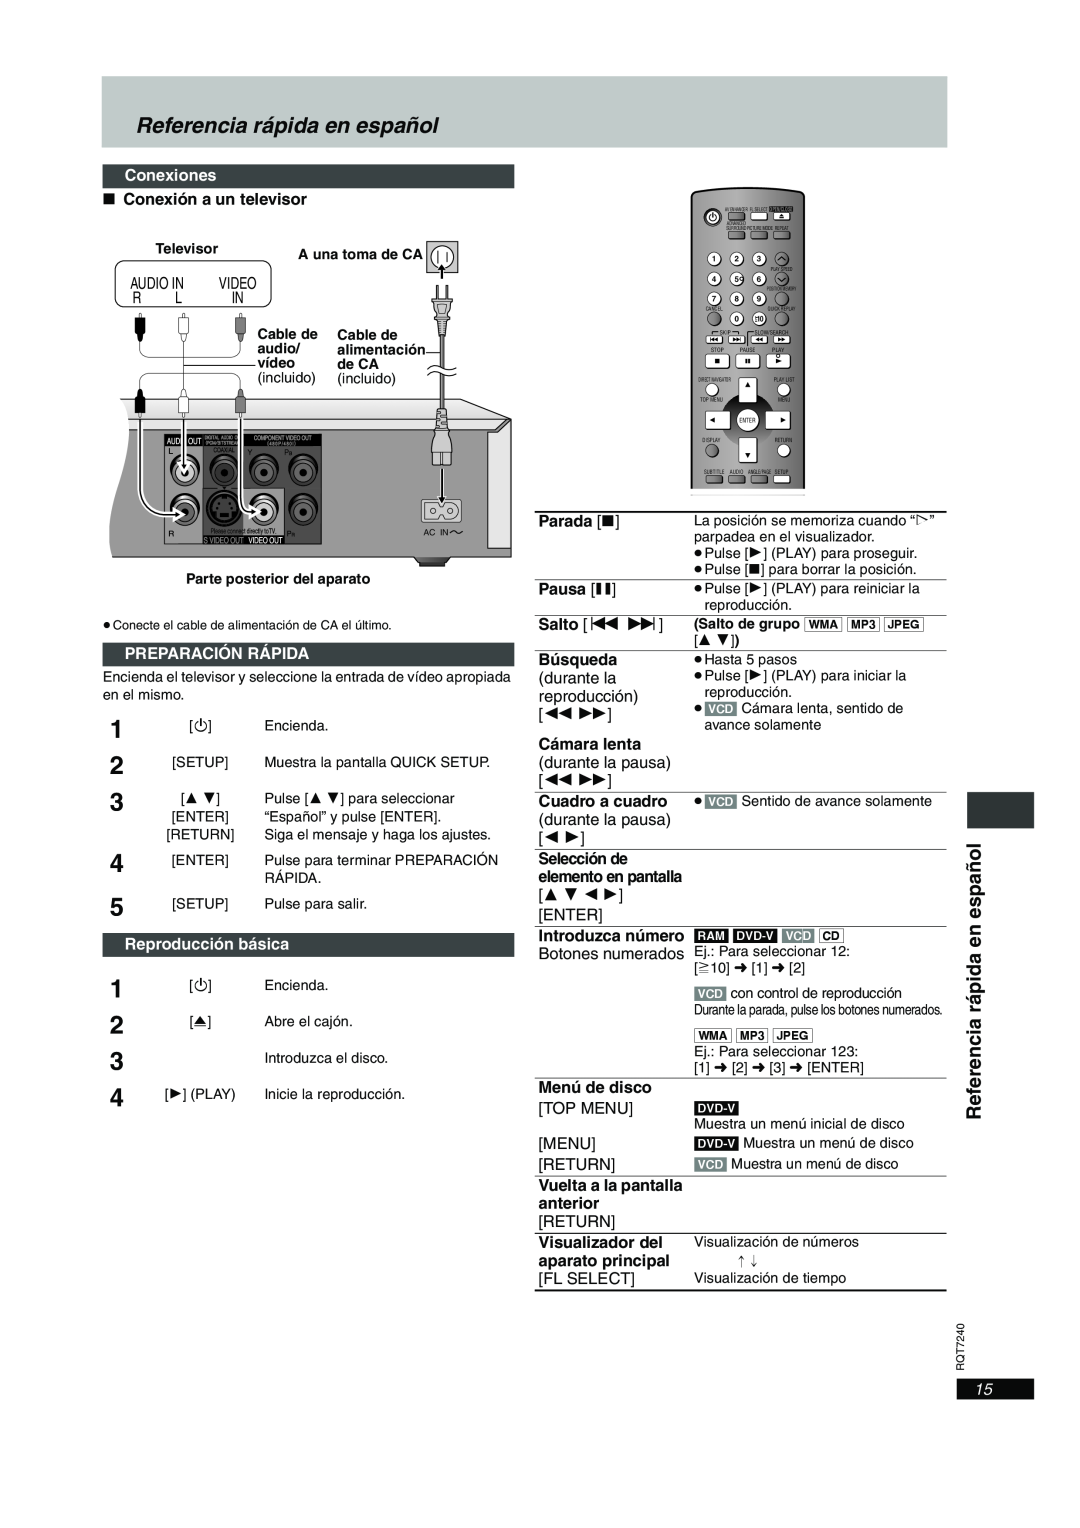 Panasonic DVD-S24, DVD-S27U Conexiones, Preparación Rápida, Reproducción básica, Referencia rápida en español 